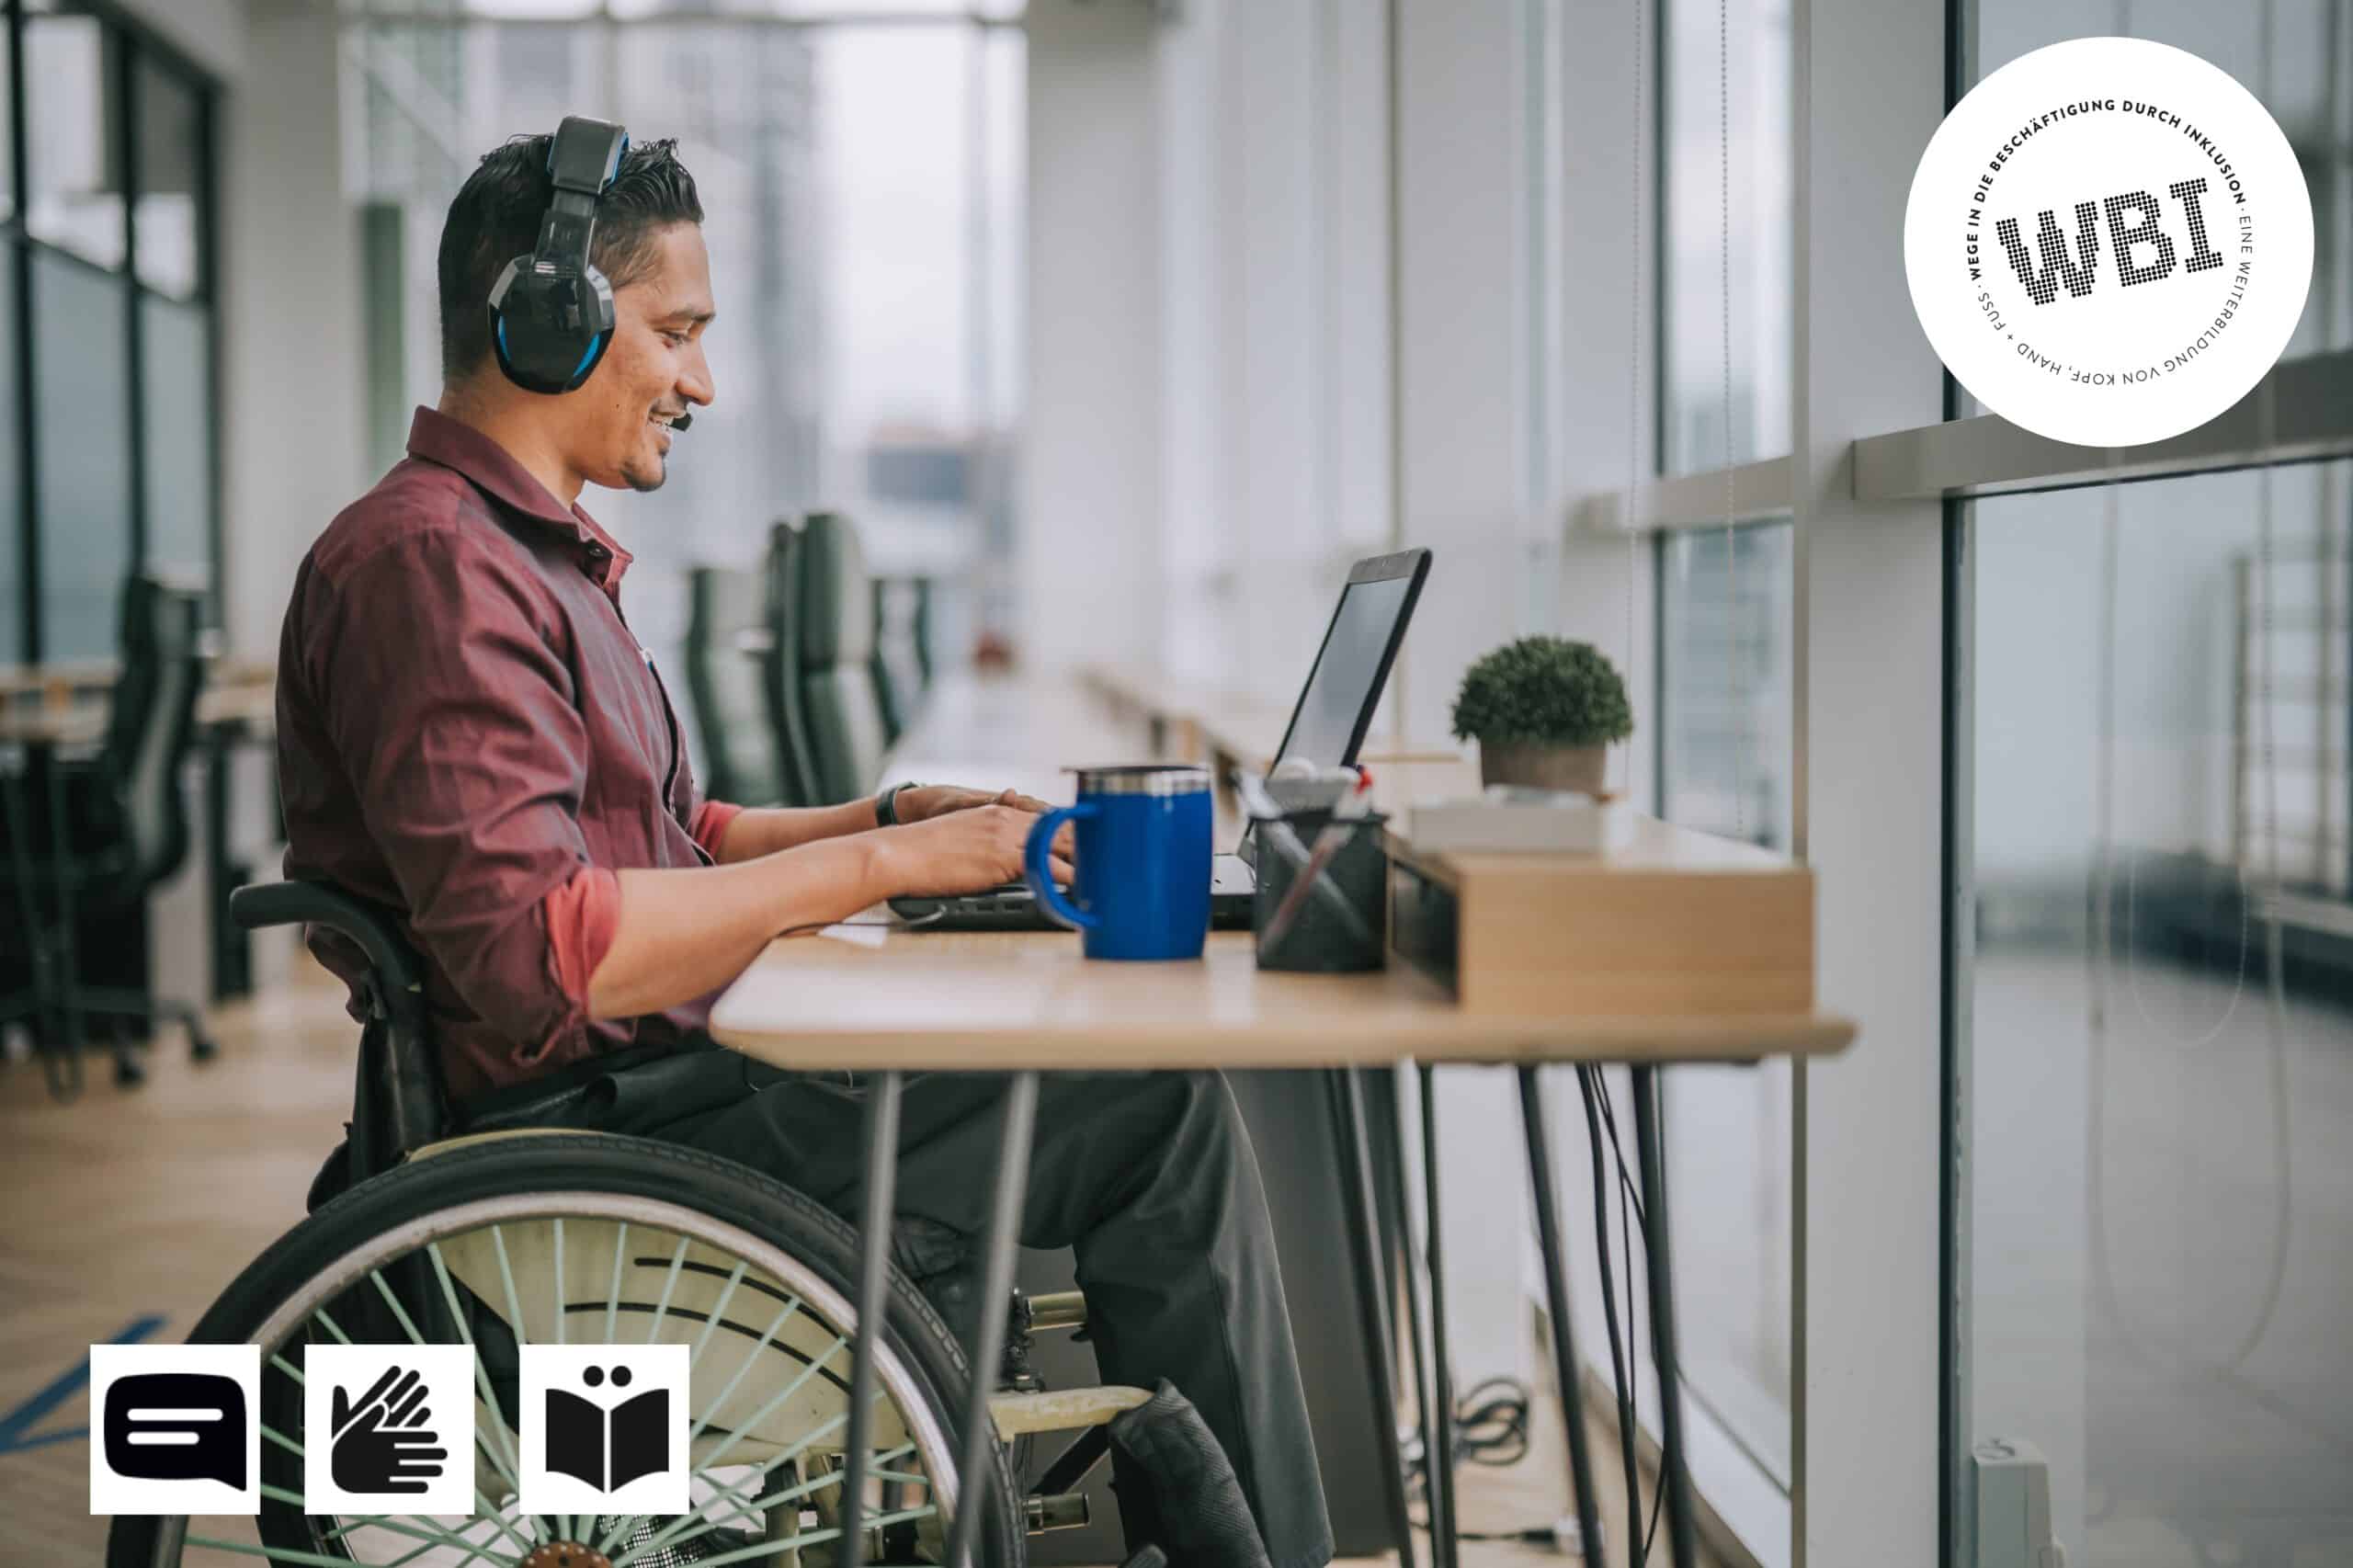 Titel Bild, Person im Rollstuhl, Männlich, sitzt vor einem Computer